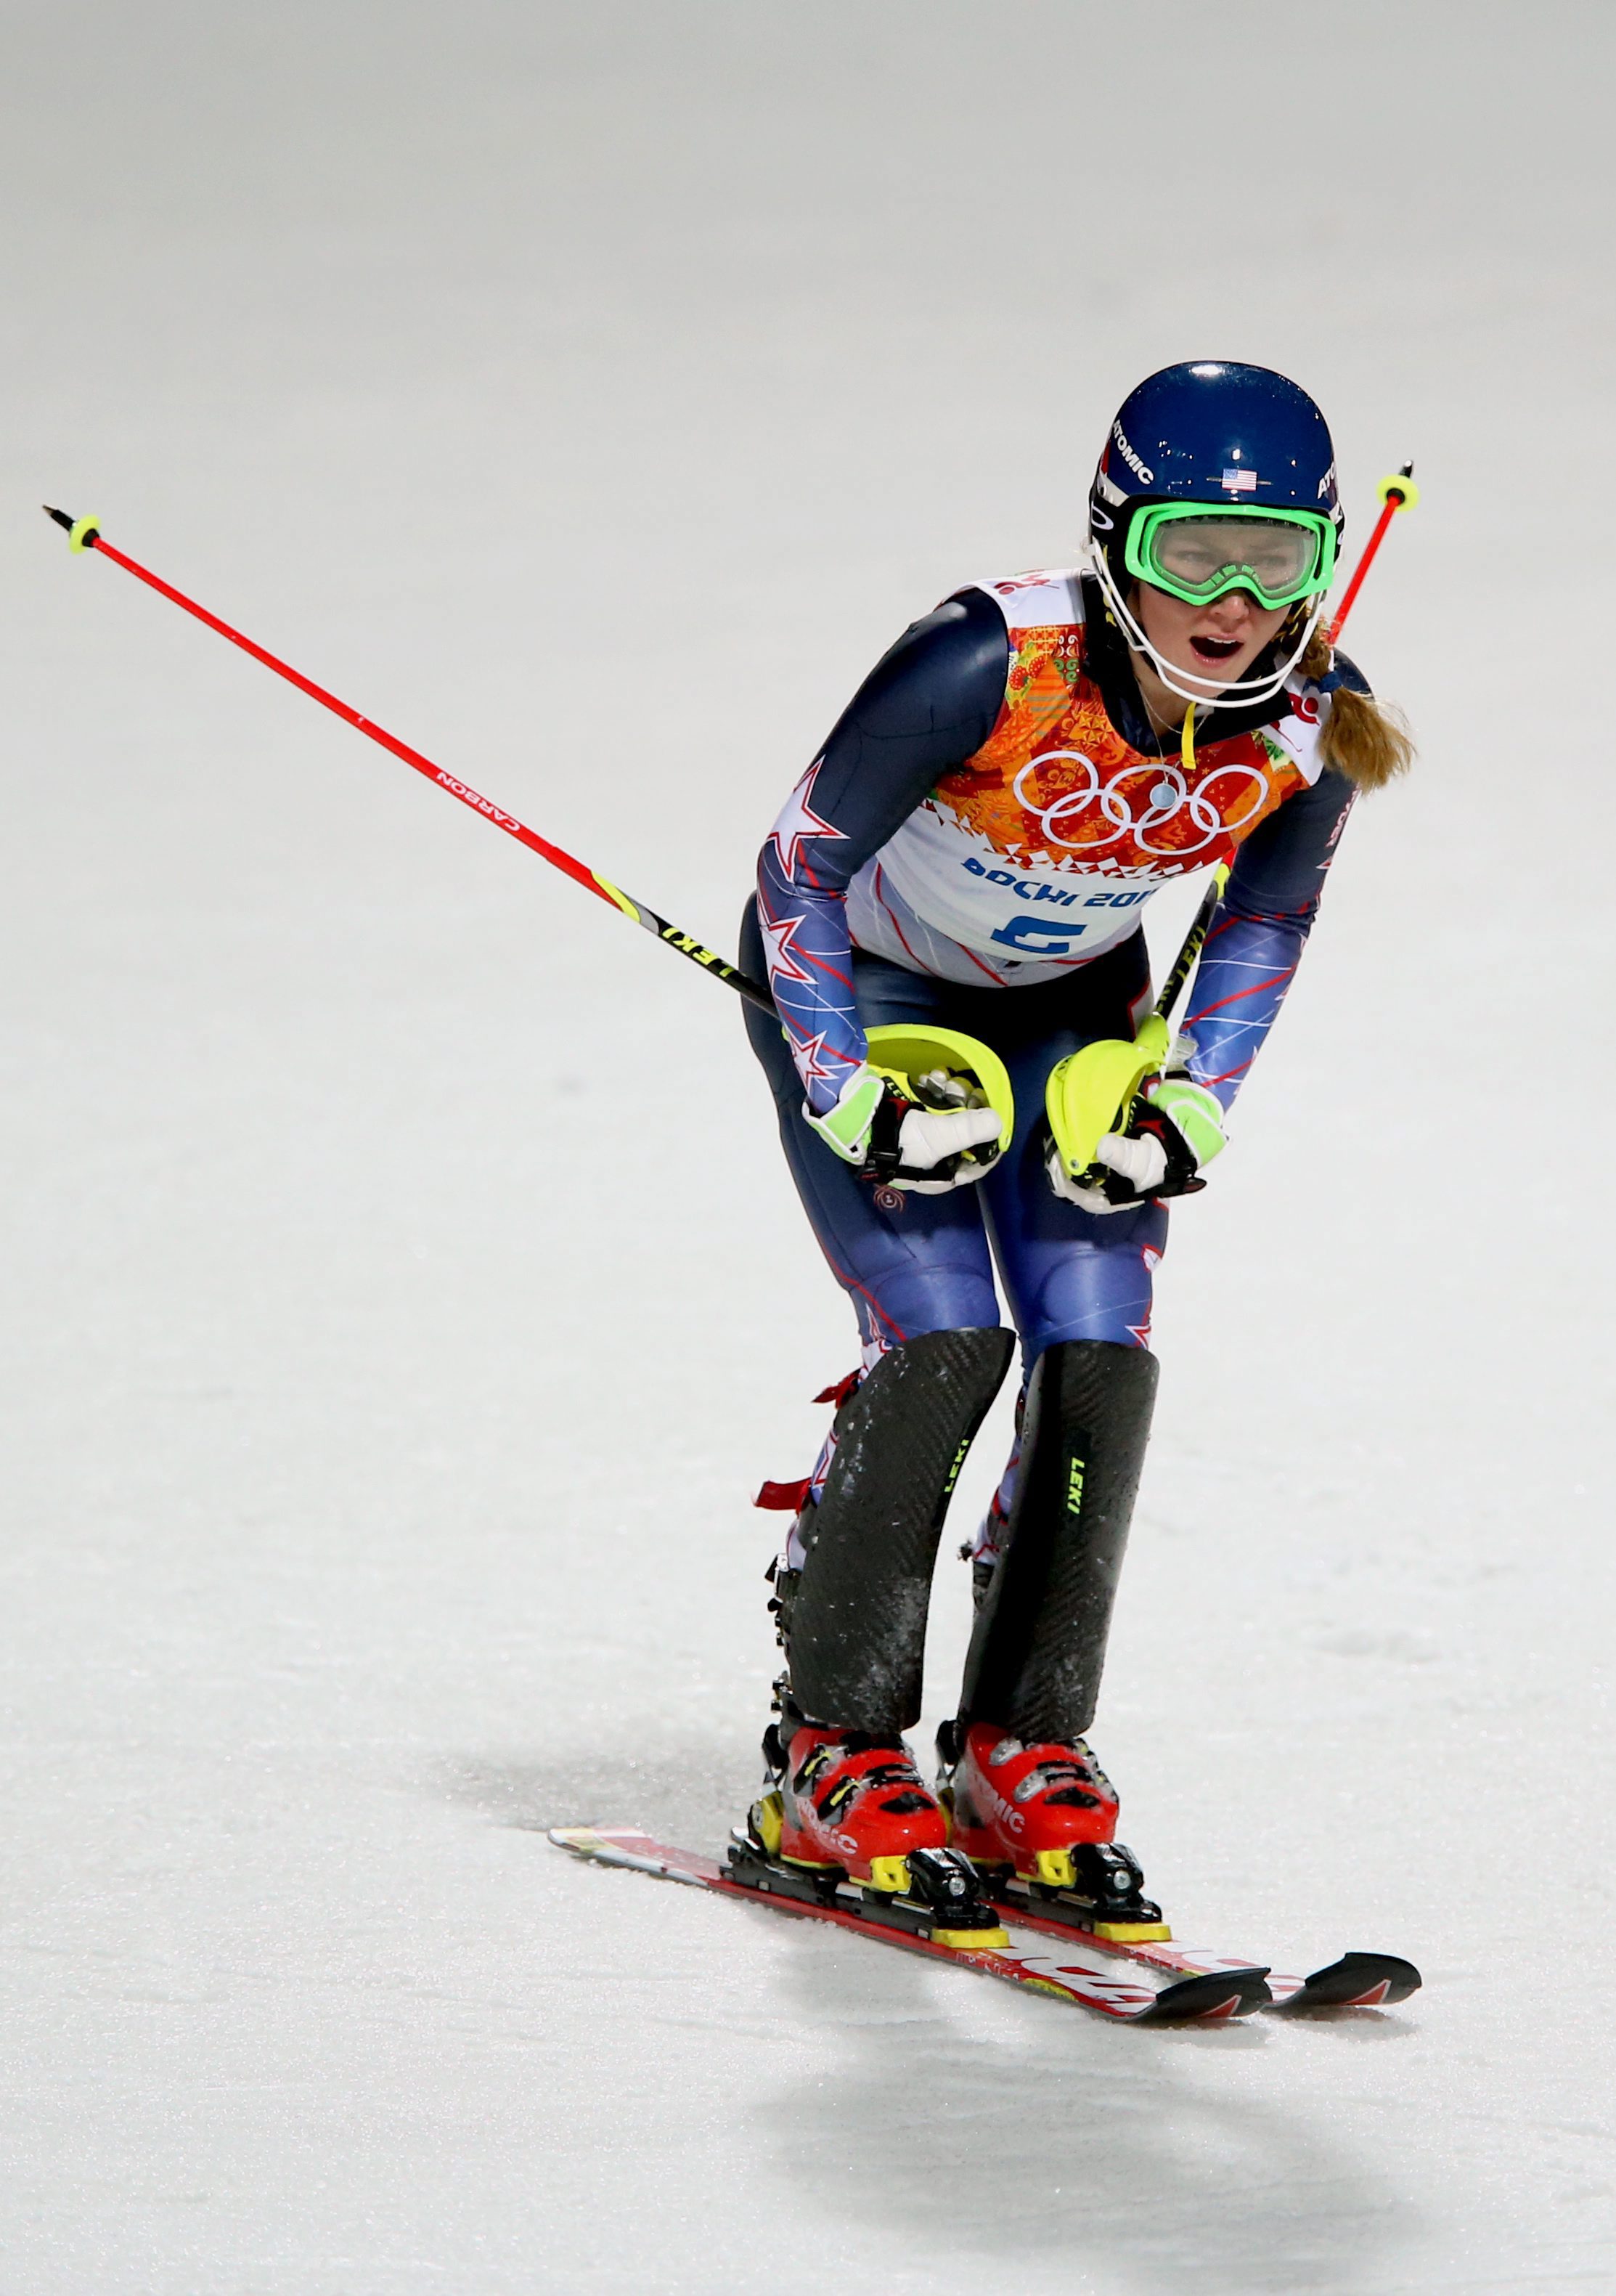 Шифрин завърши първа в състезанието от Световната купа във френския зимен център Мерибел